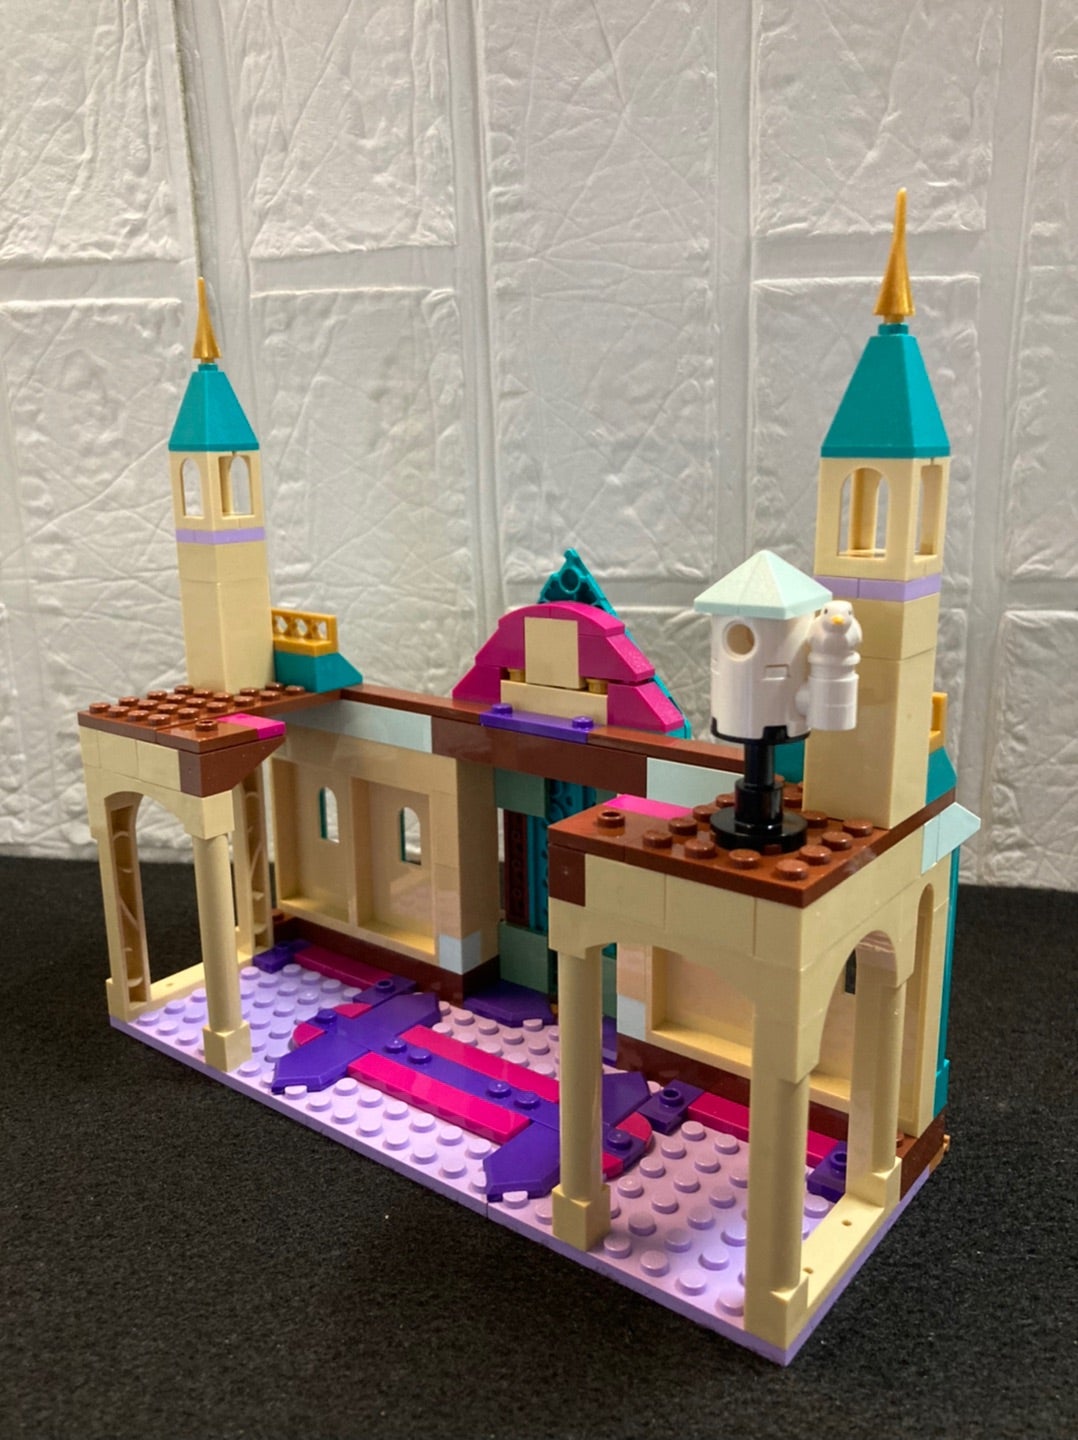 レゴ(LEGO) アナと雪の女王2 アレンデール城 41167を作ってみました 